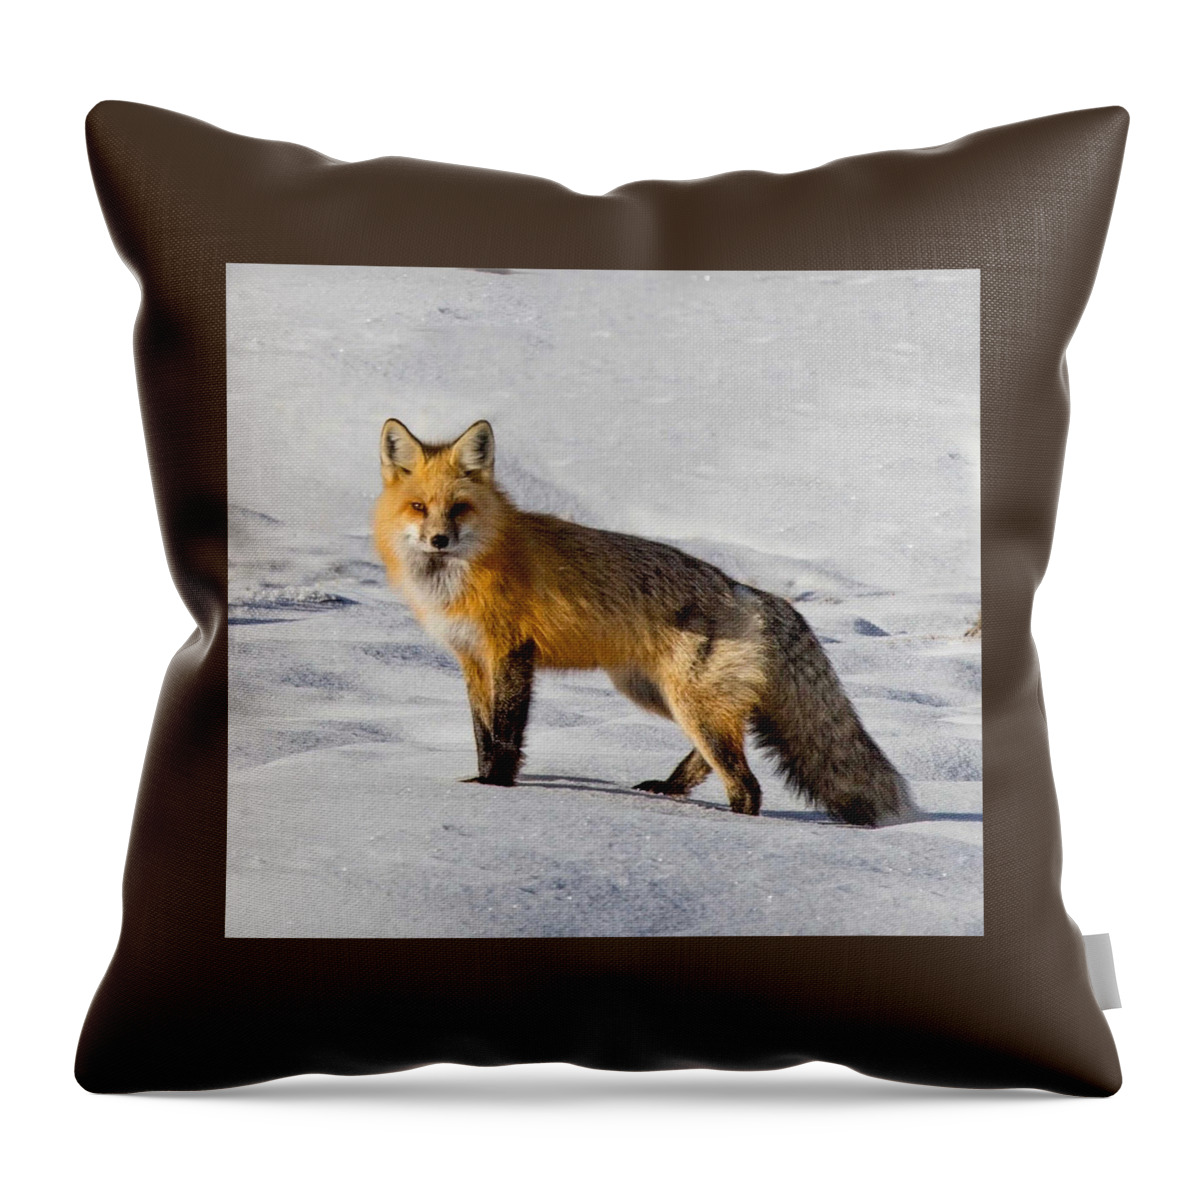 Fox Throw Pillow featuring the photograph Vixen by Carolyn Mickulas